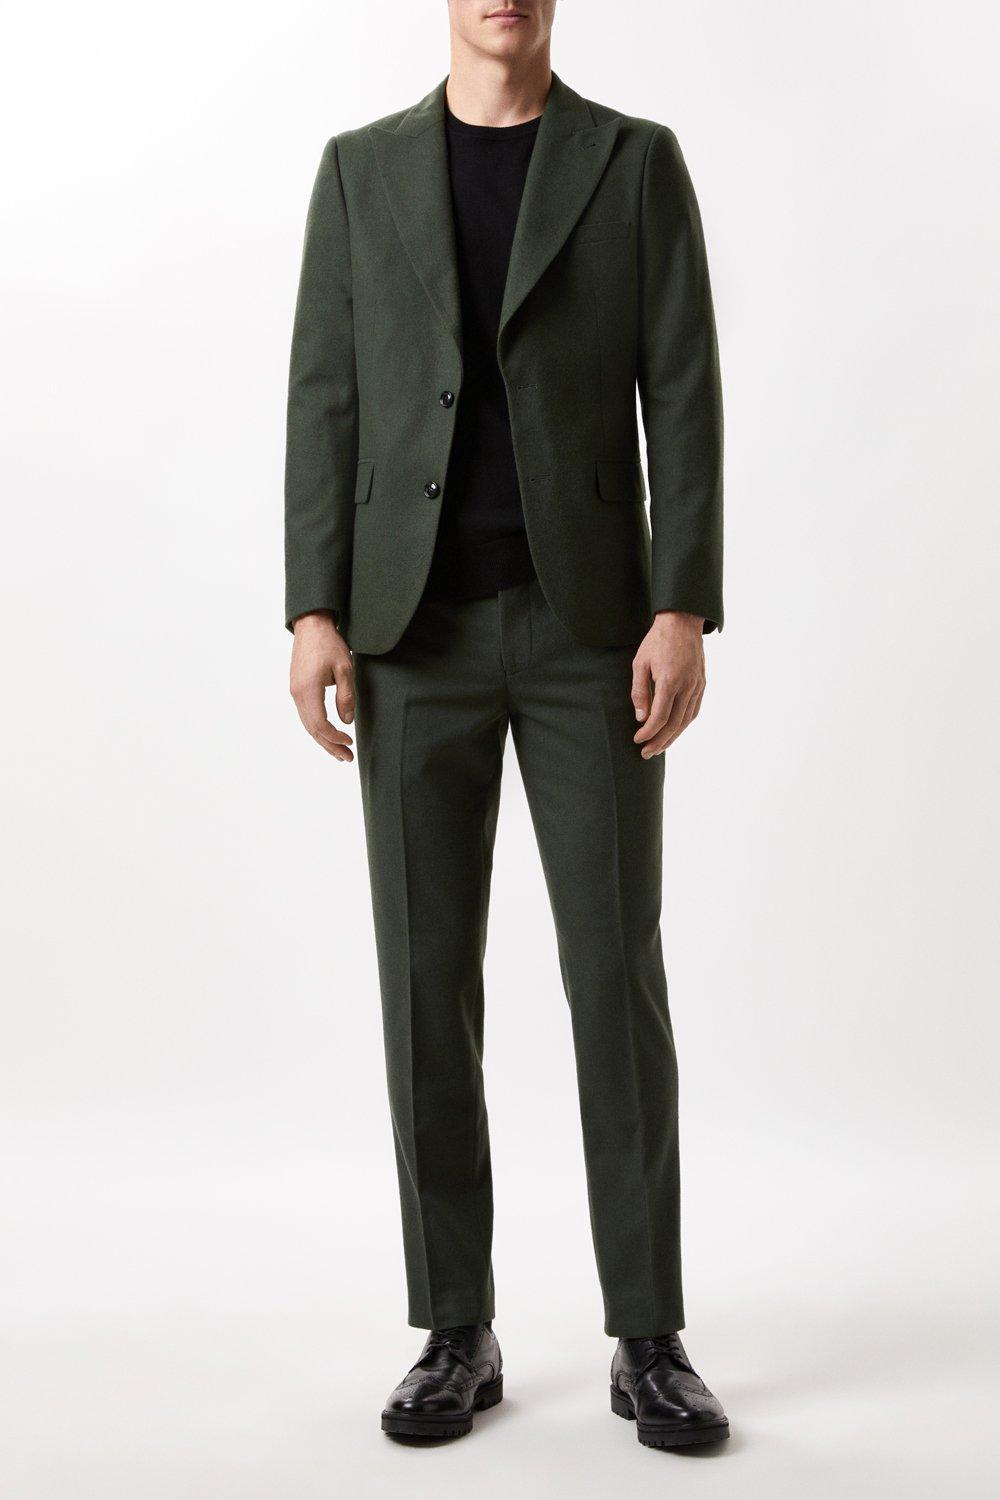 Mens Slim Fit Green Tweed Suit Jacket product